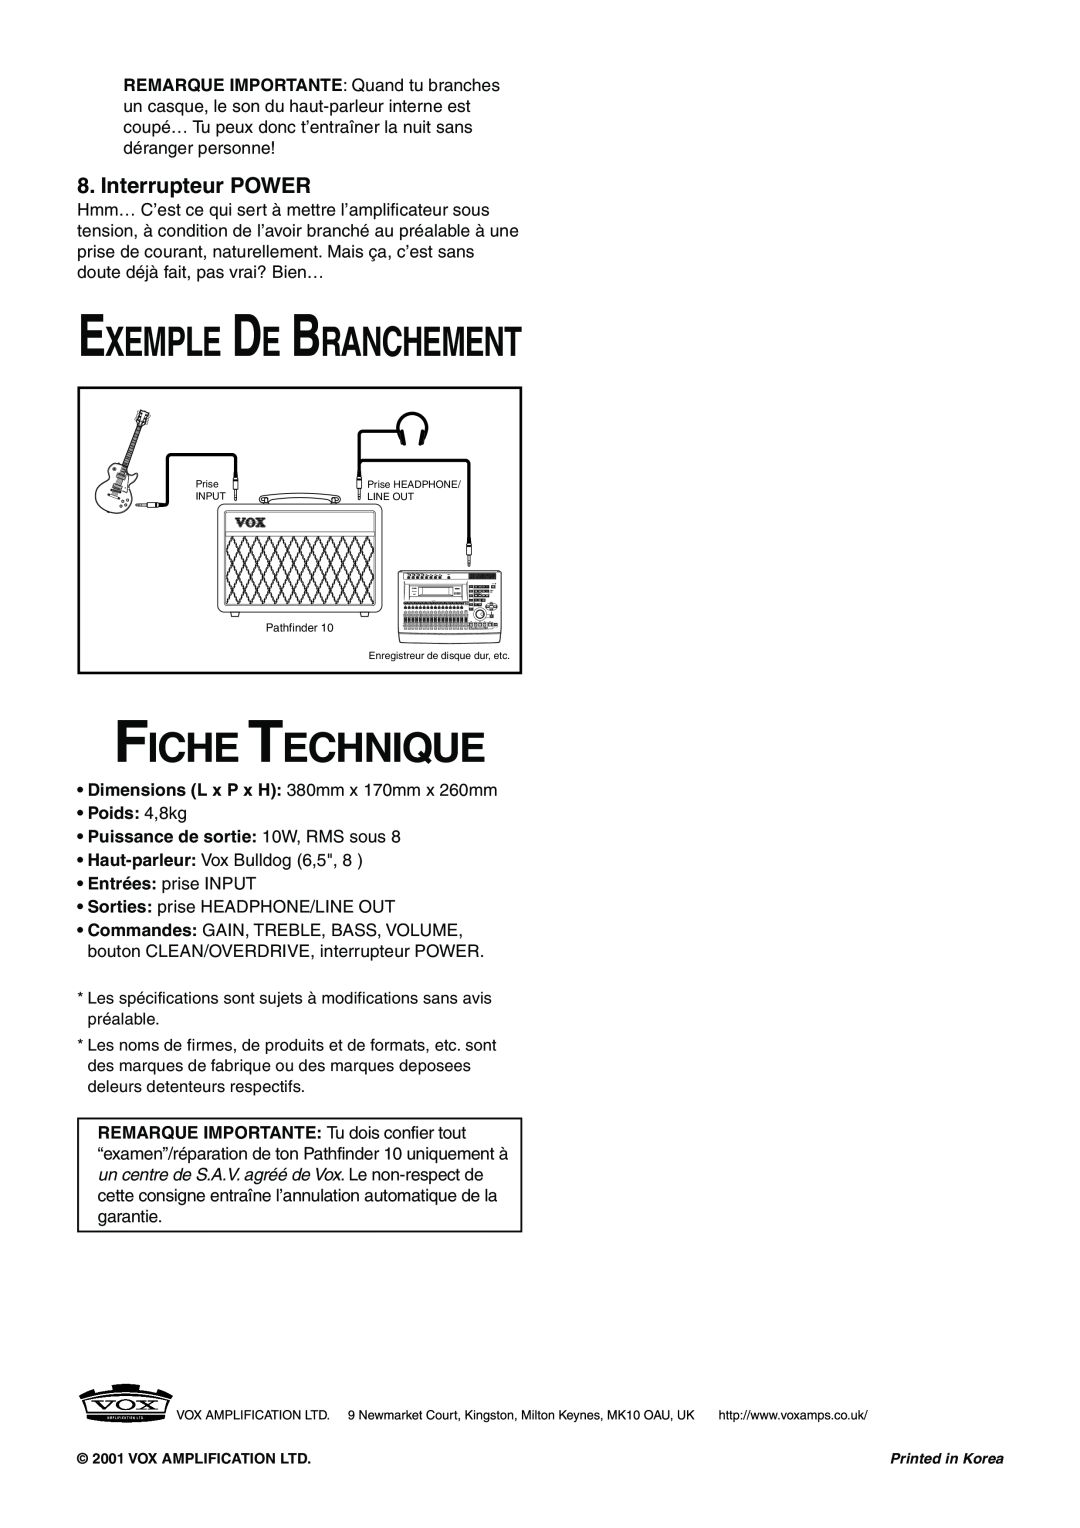 Vox 10 manual Exemple De Branchement, Fiche Technique, Interrupteur POWER 